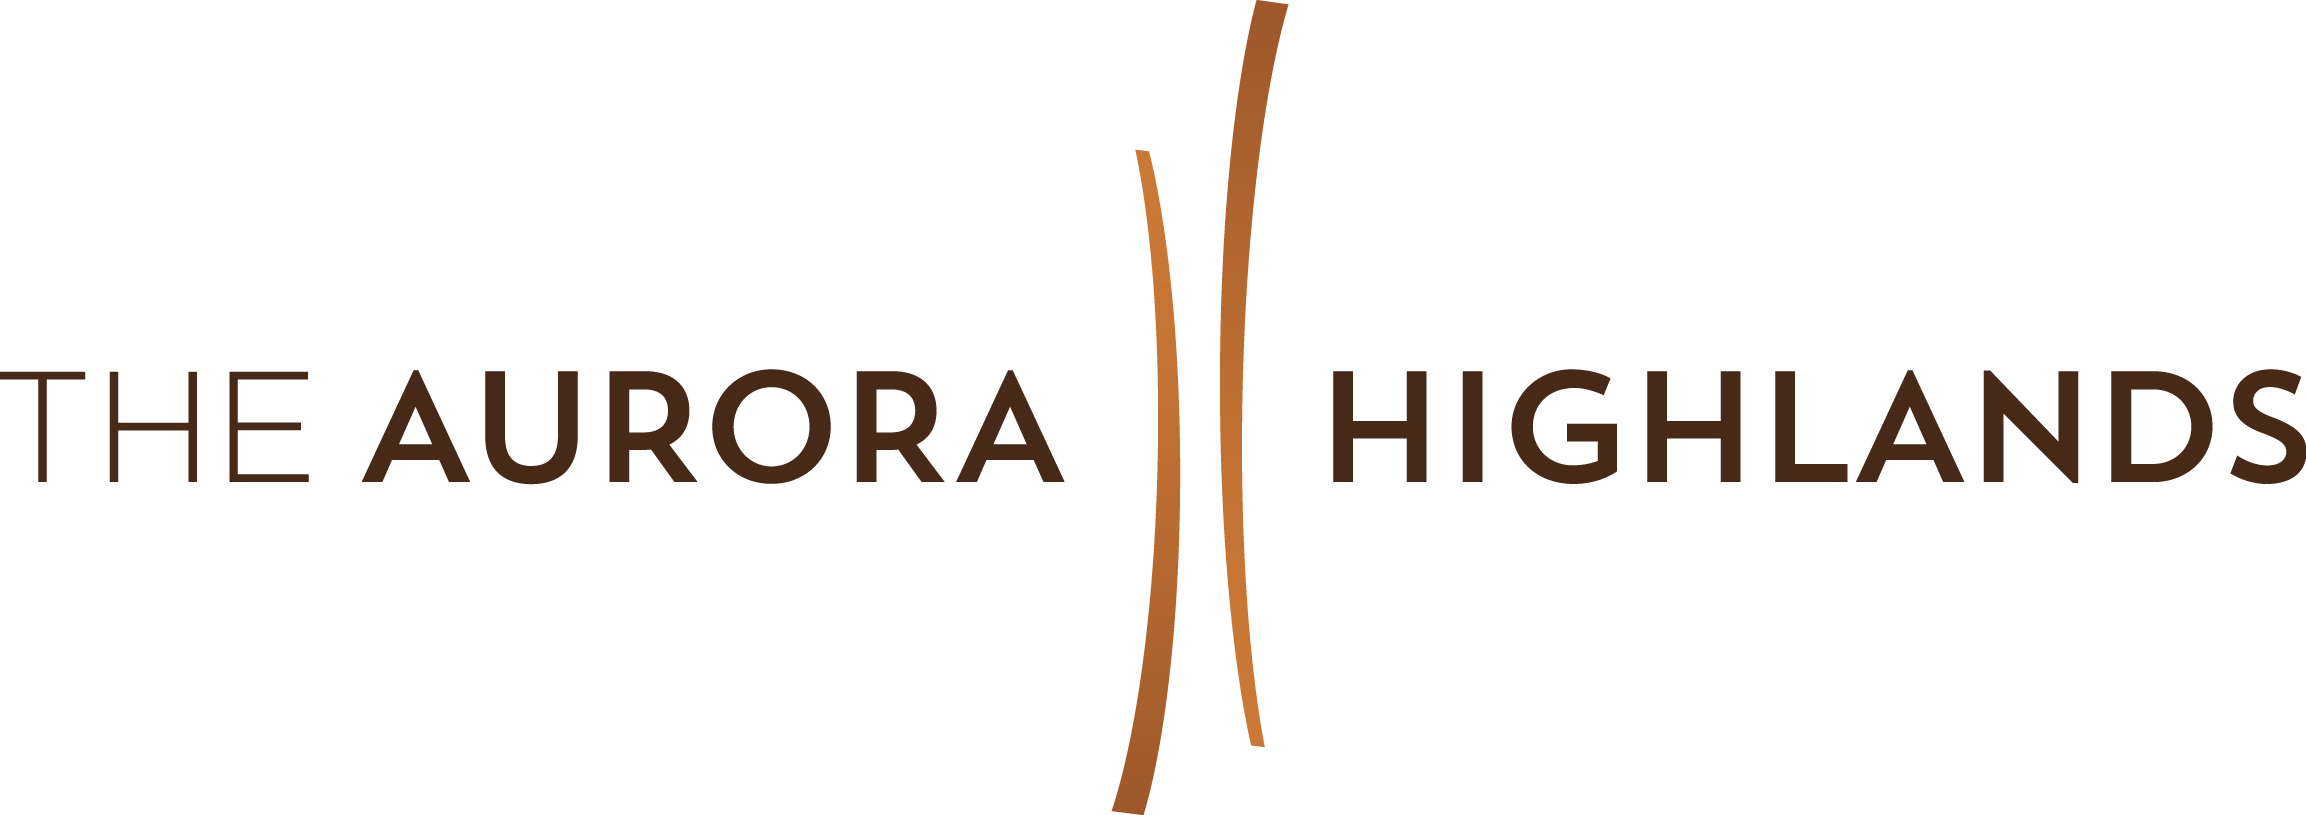 The Aurora Highlands logo